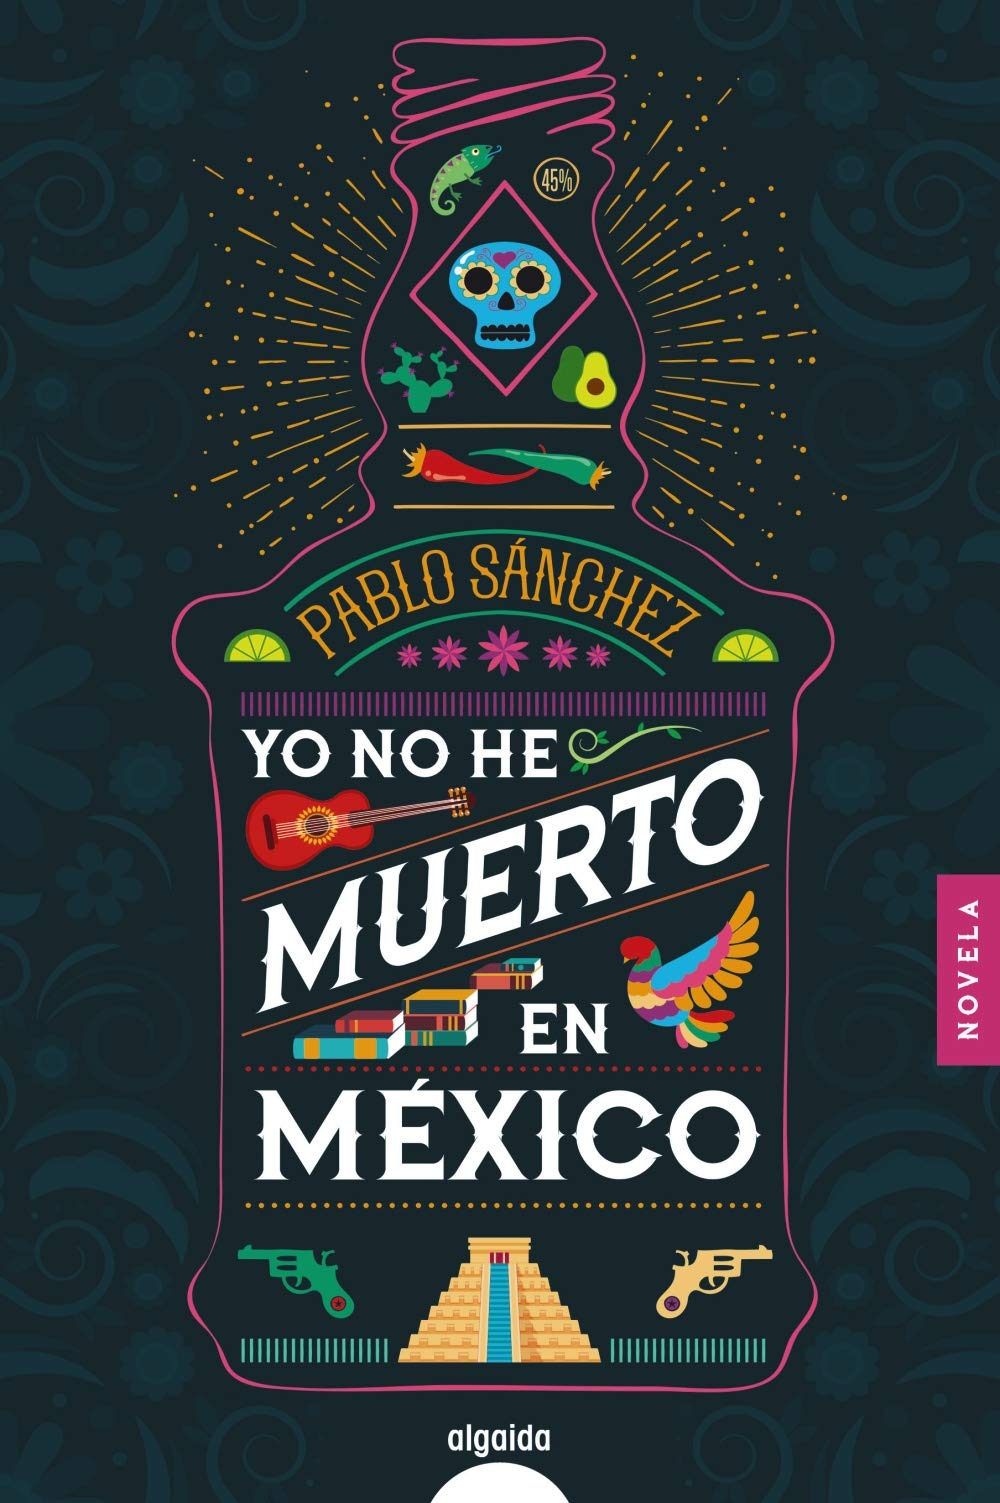 Siete comentarios sobre Yo no he muerto en México, de Pablo Sánchez